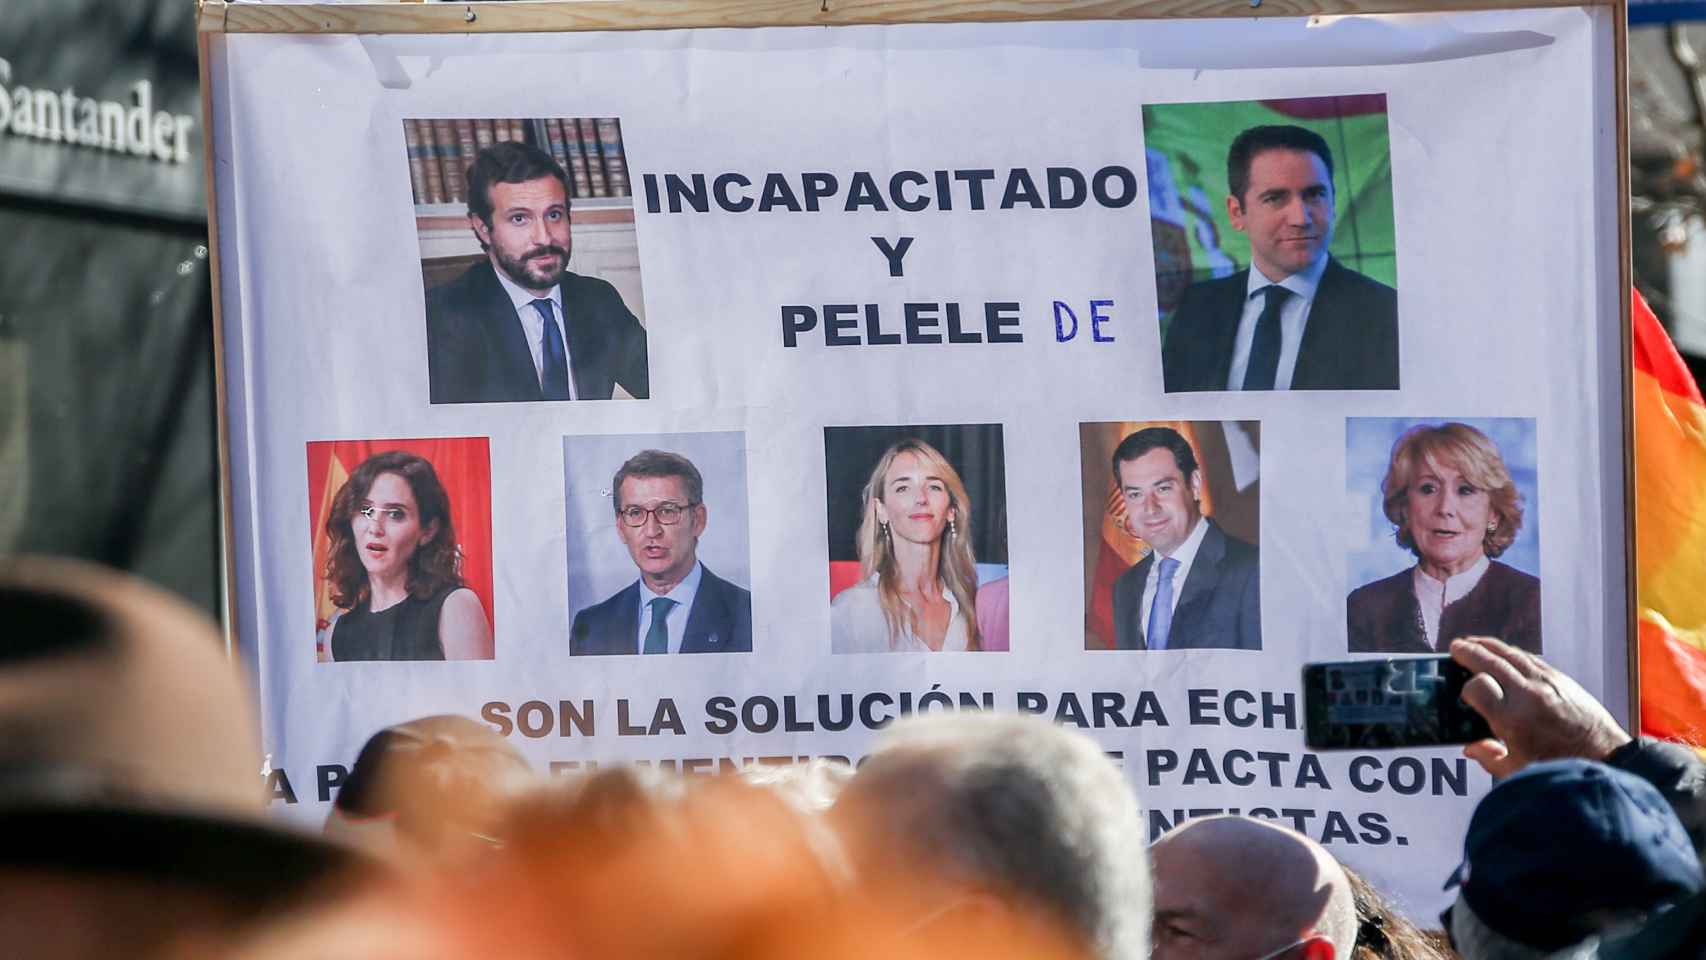 Varios manifestantes sostienen una pancarta con imágenes de miembros del PP en la concentración de apoyo a Díaz Ayuso celebrada este domingo en Génova 13.